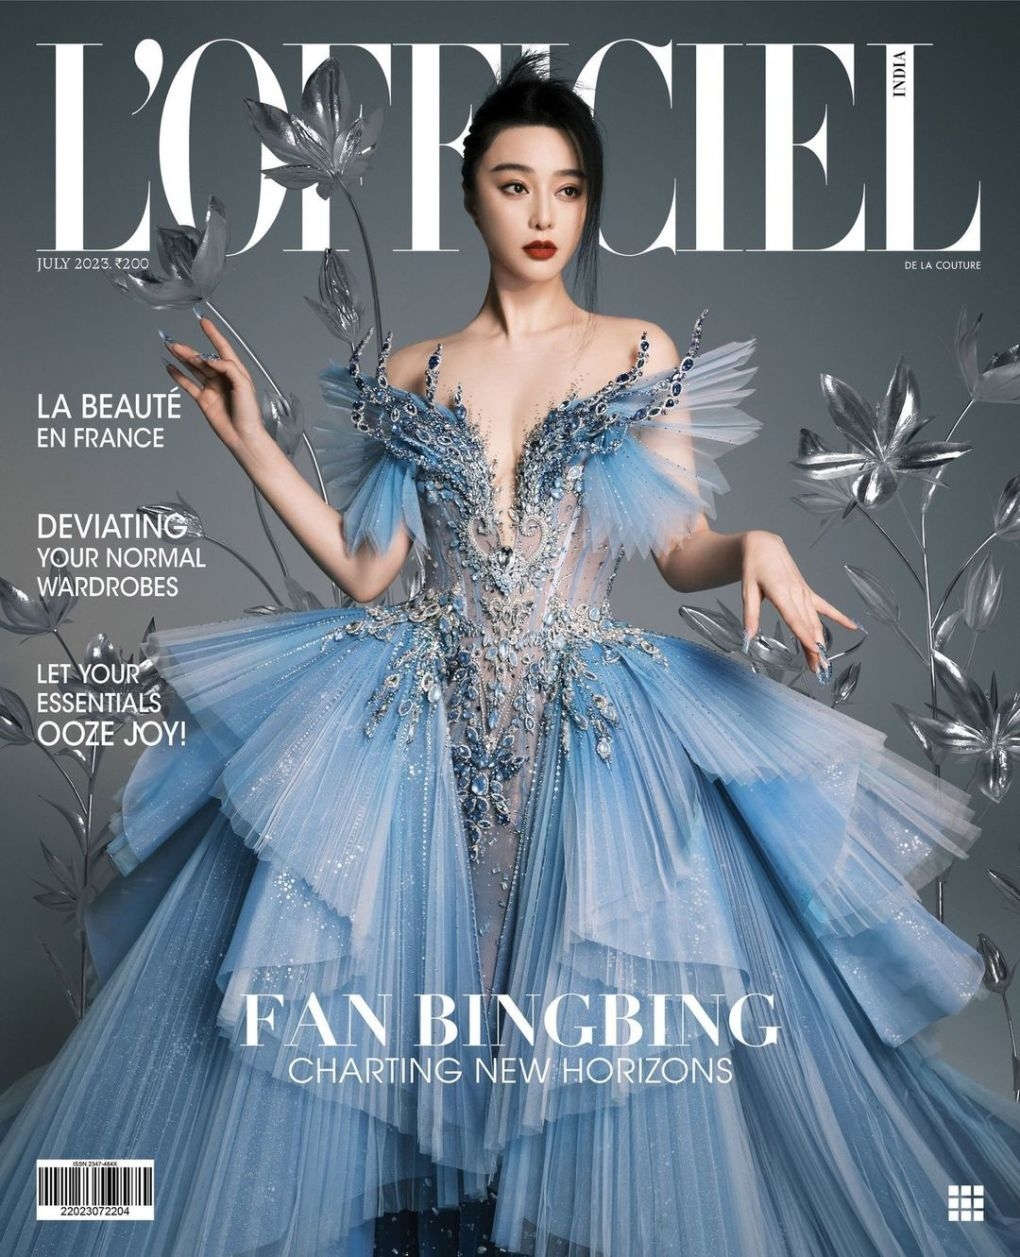 Phạm Băng Băng mặc đầm của nhà thiết kế Việt lên bìa tạp chí